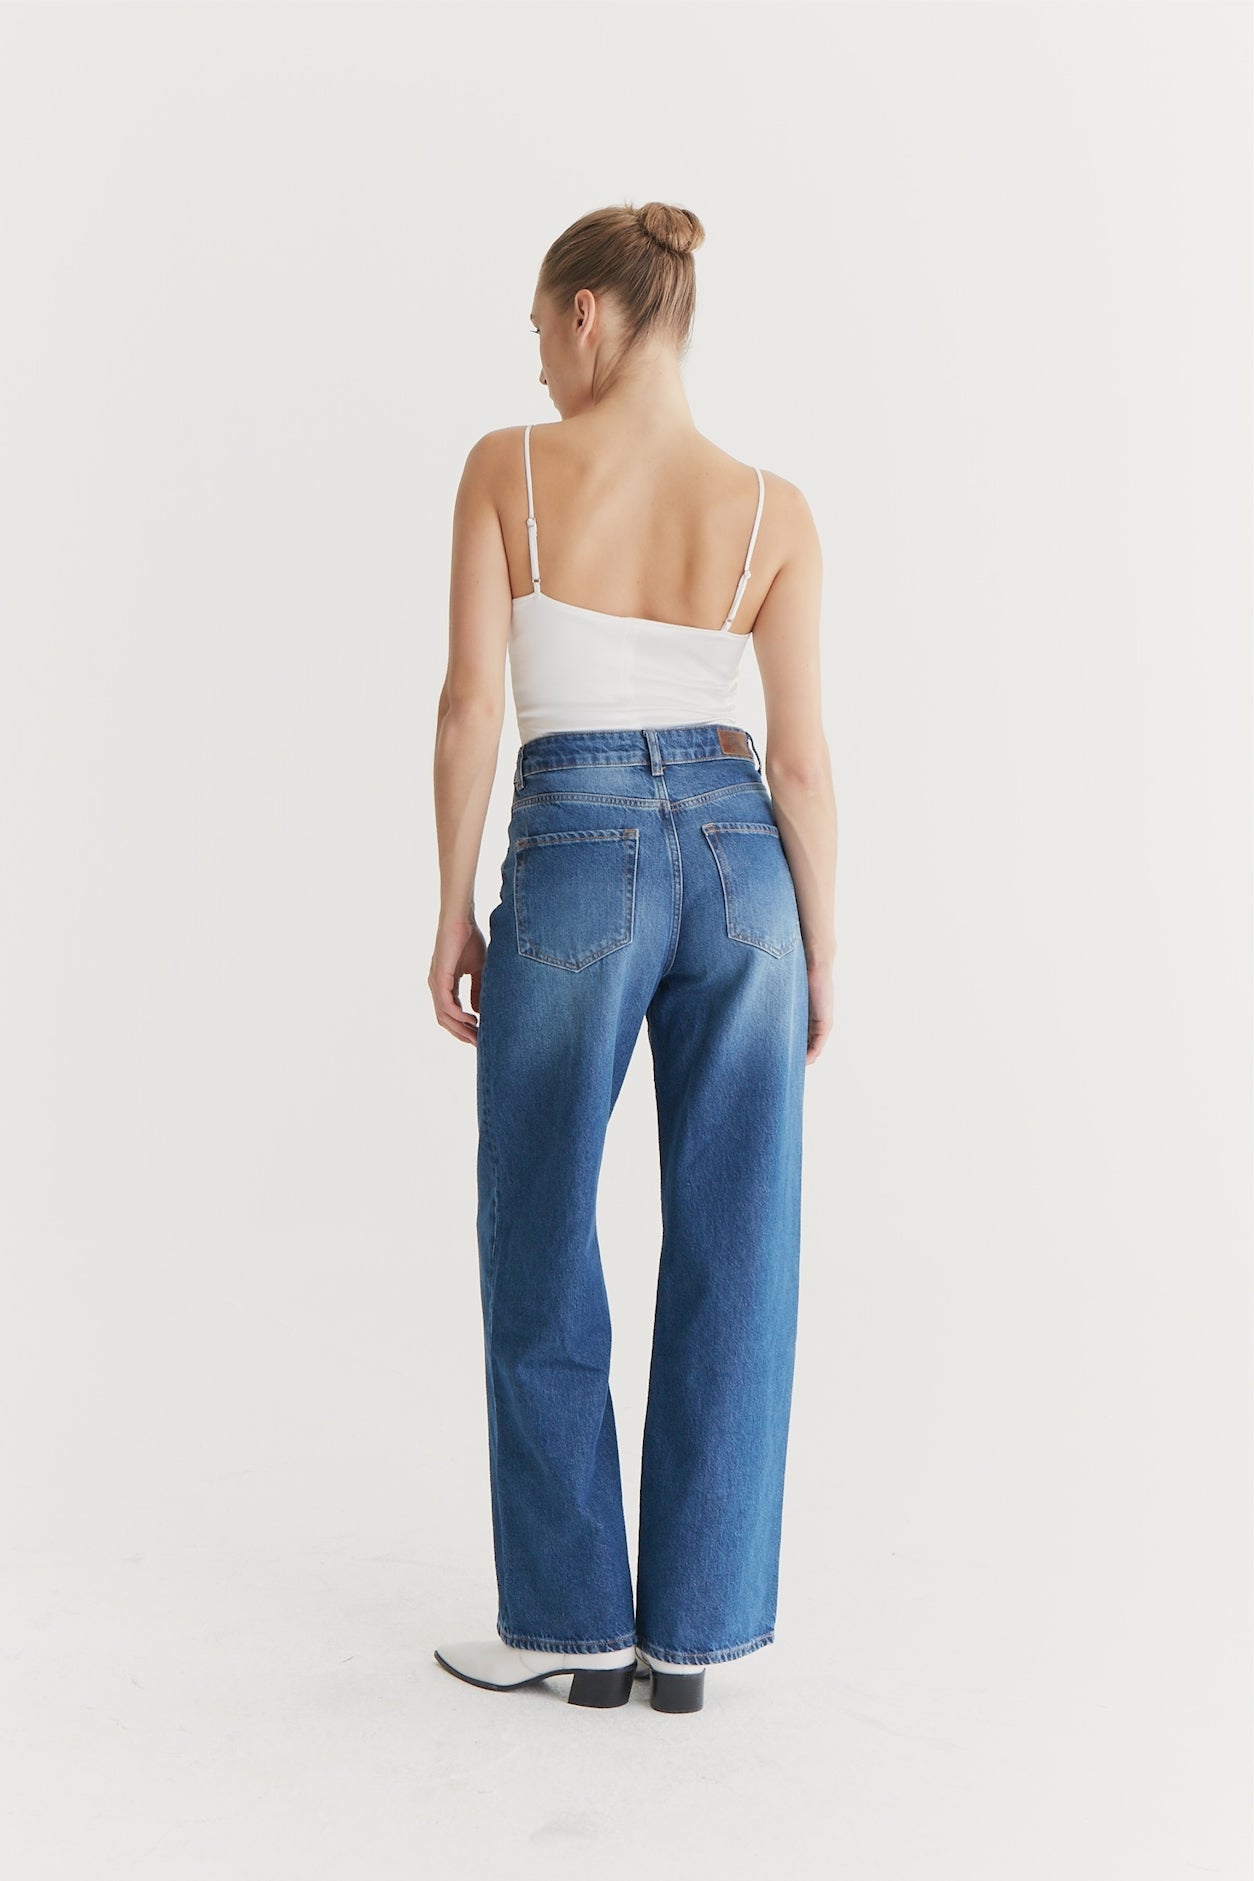 Maria - Jeans mit weitem Bein - Astra Blau